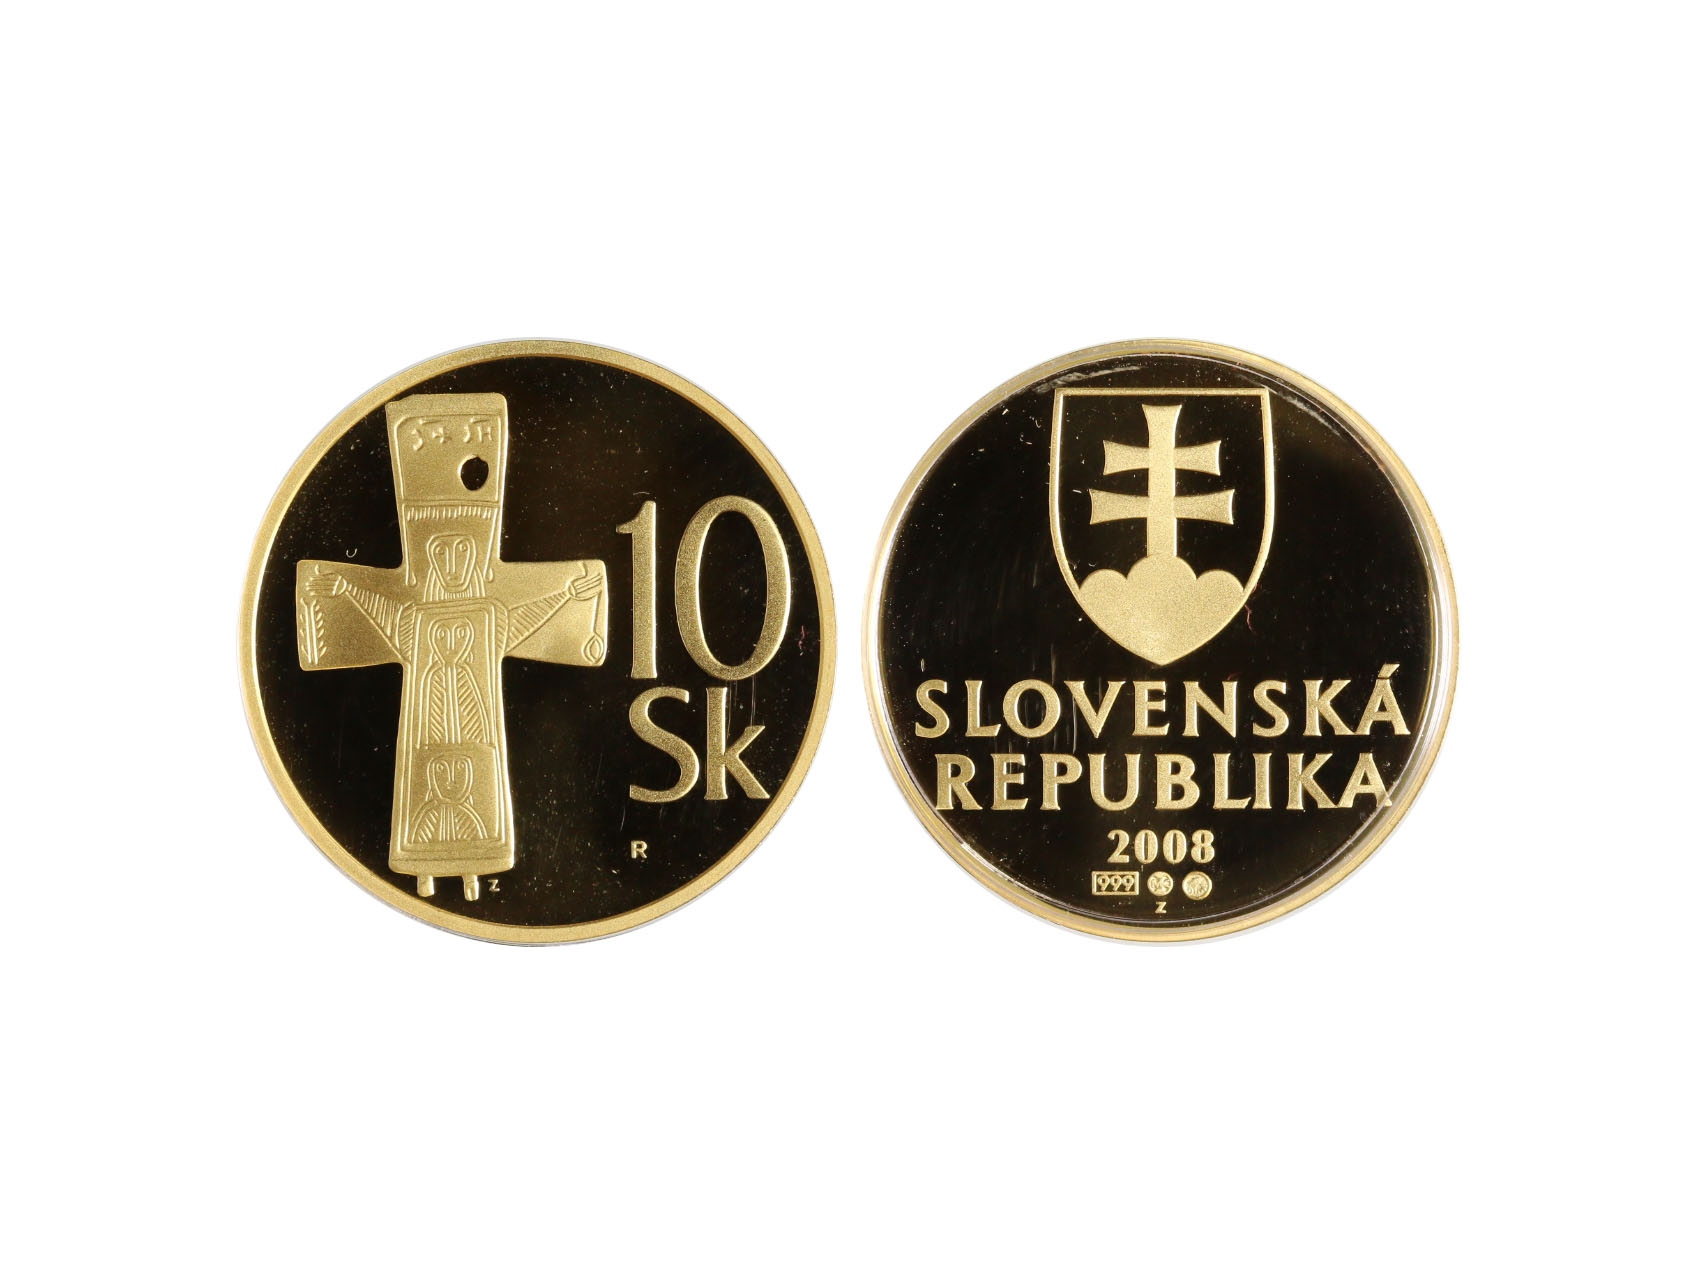 Slovenská Republika 1993 - 10 Sk 2008 Au replika zn. R, Au 0,999, 15,55g, náklad 3800ks, dřevěná etue, certifikát, N7